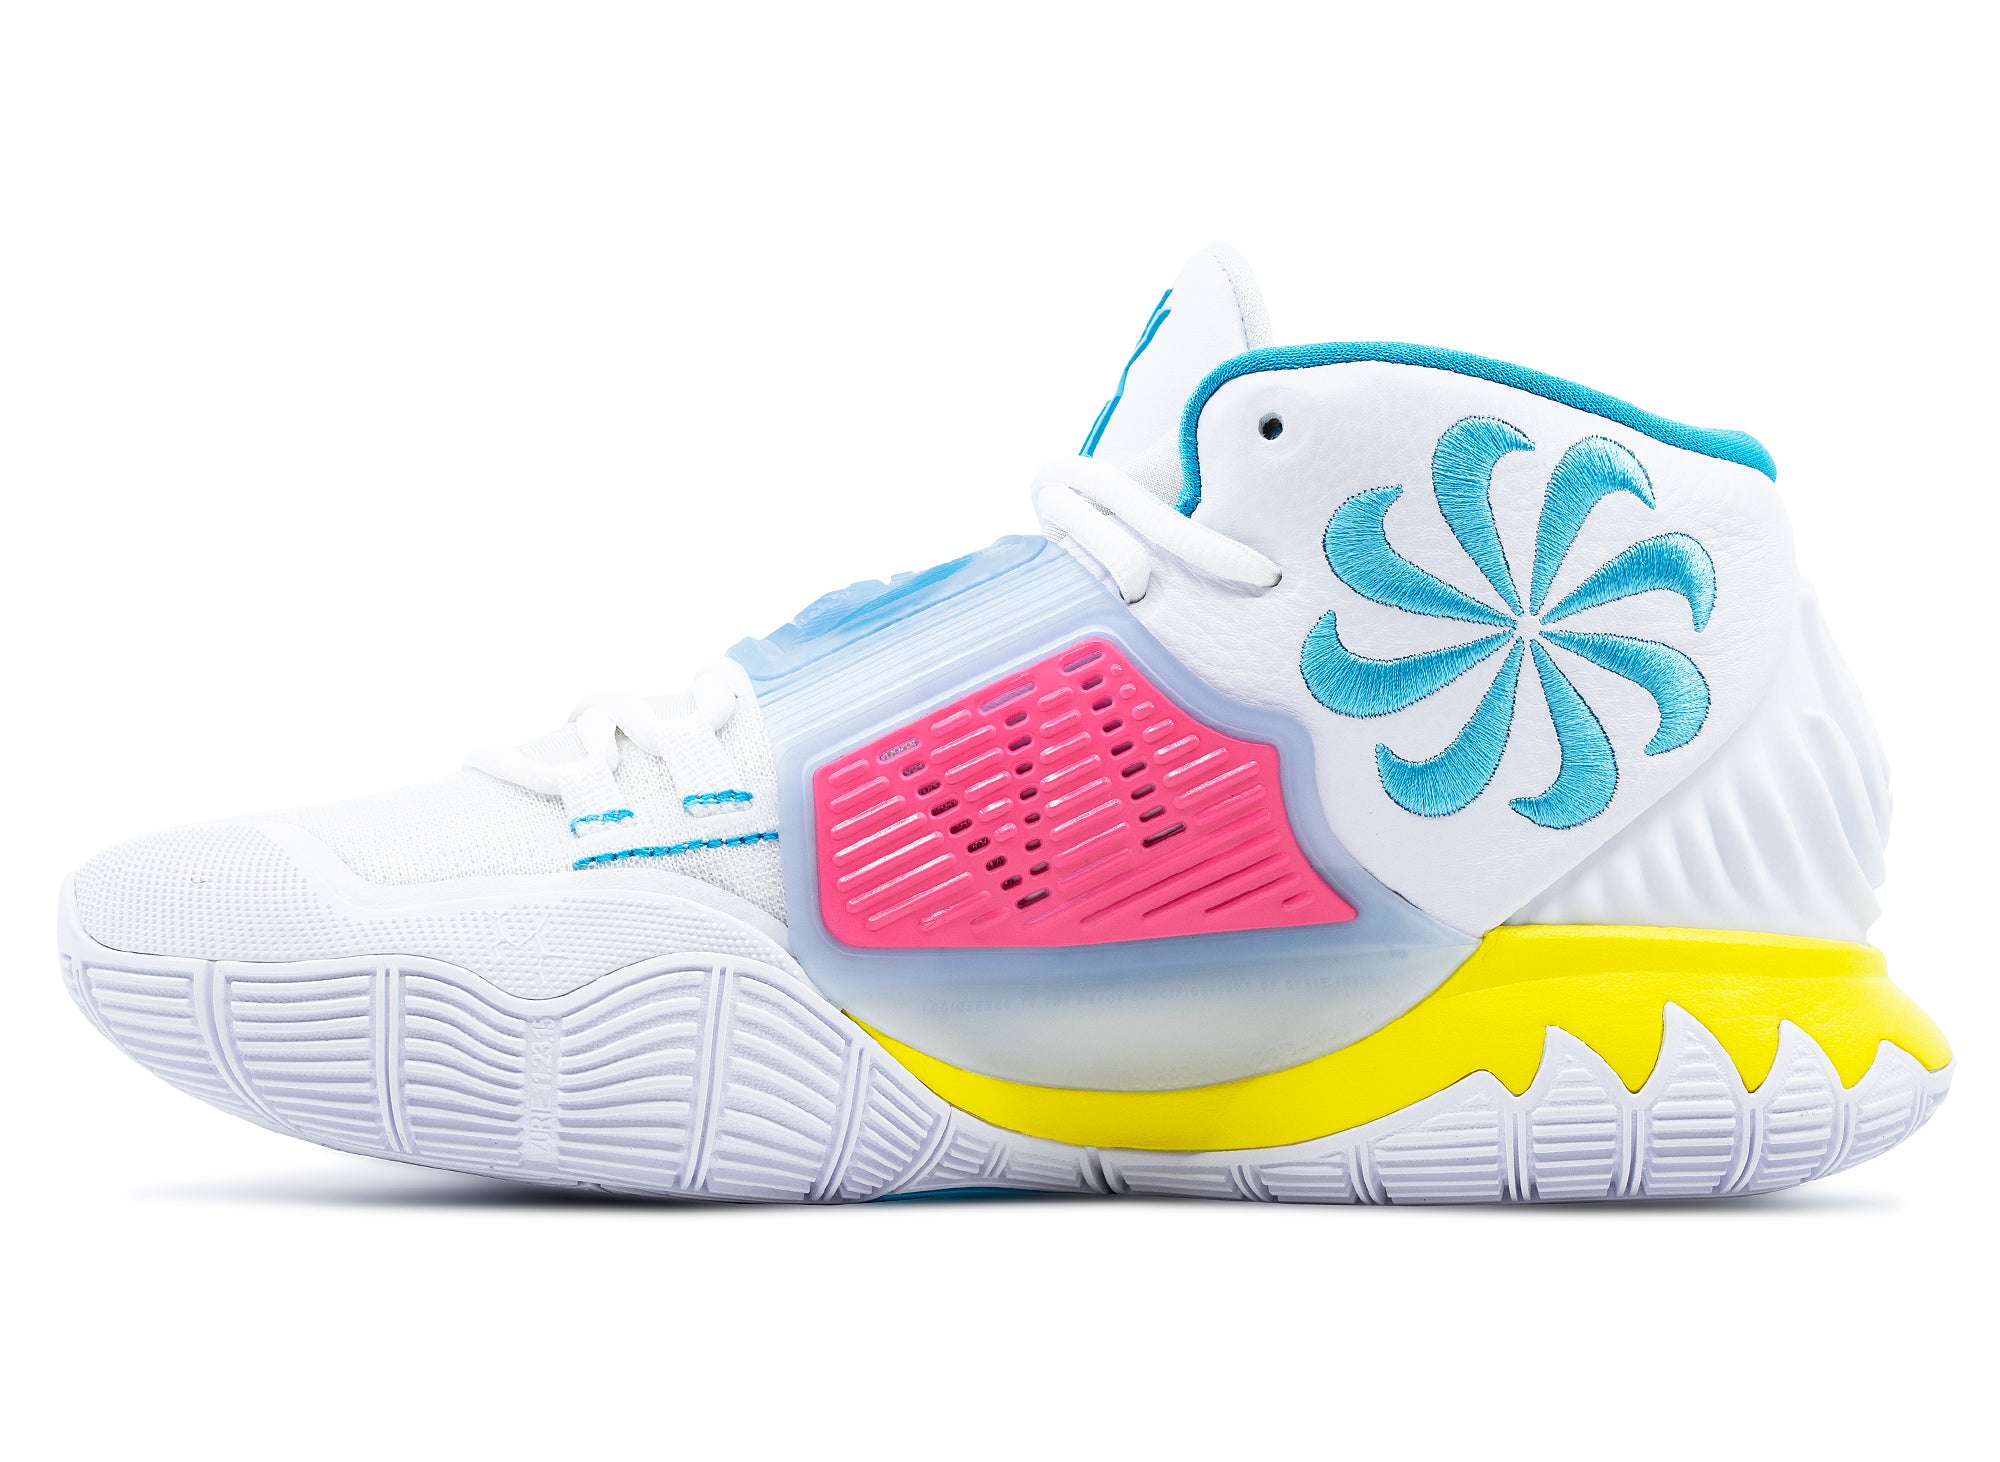 Ryoko Concepts x Nike Kyrie 6 EP khepri sacred shell movement basketball shoes